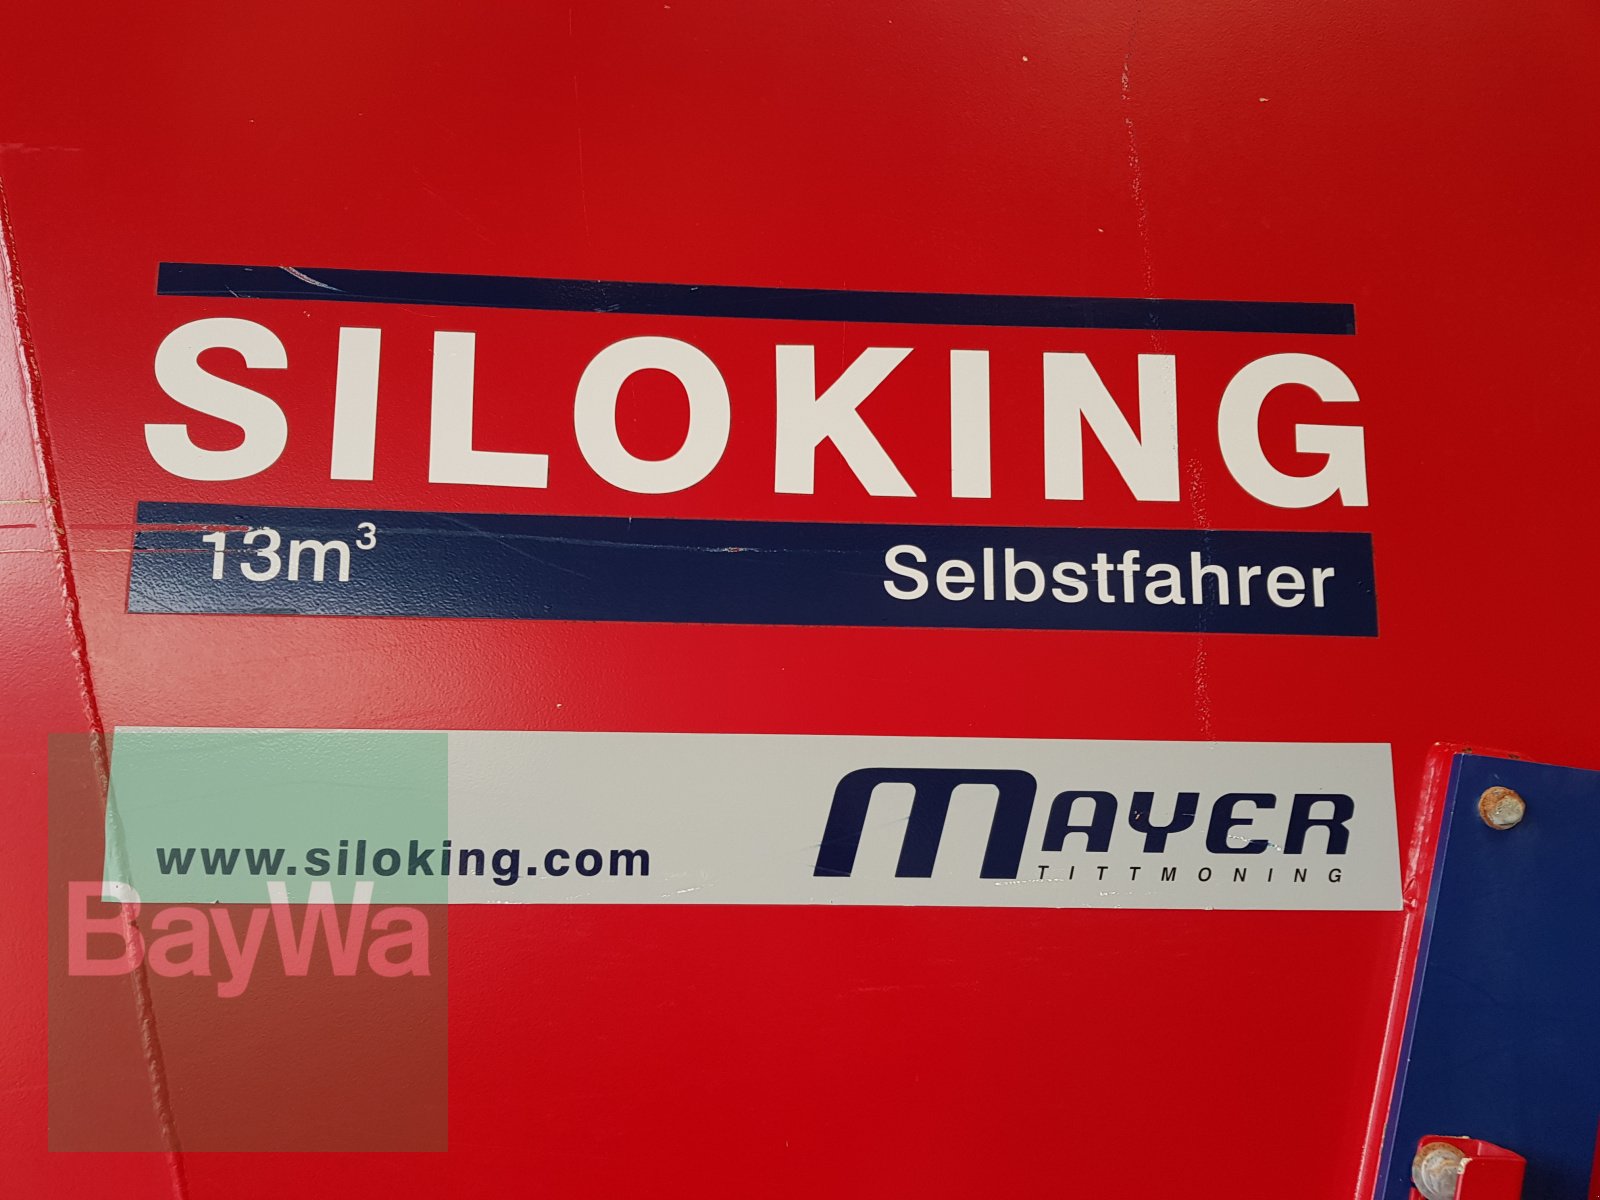 Futtermischwagen des Typs Siloking SF 13, Gebrauchtmaschine in Bamberg (Bild 9)